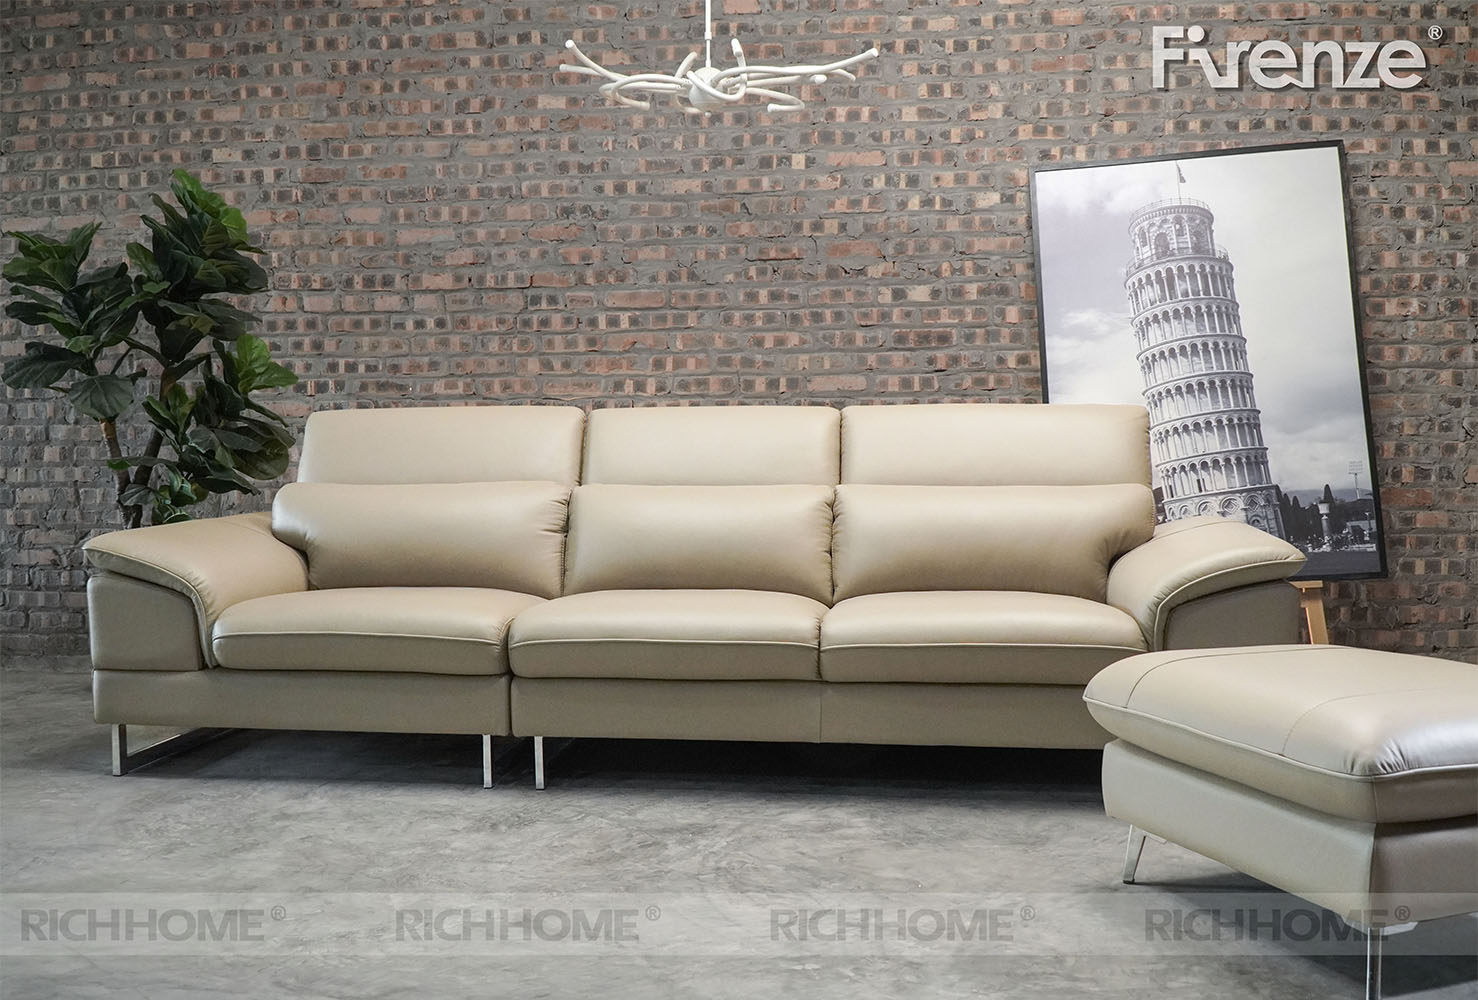 Tổng hợp các mẫu sofa cho căn hộ nhỏ diện tích 25m2 - Ảnh 4